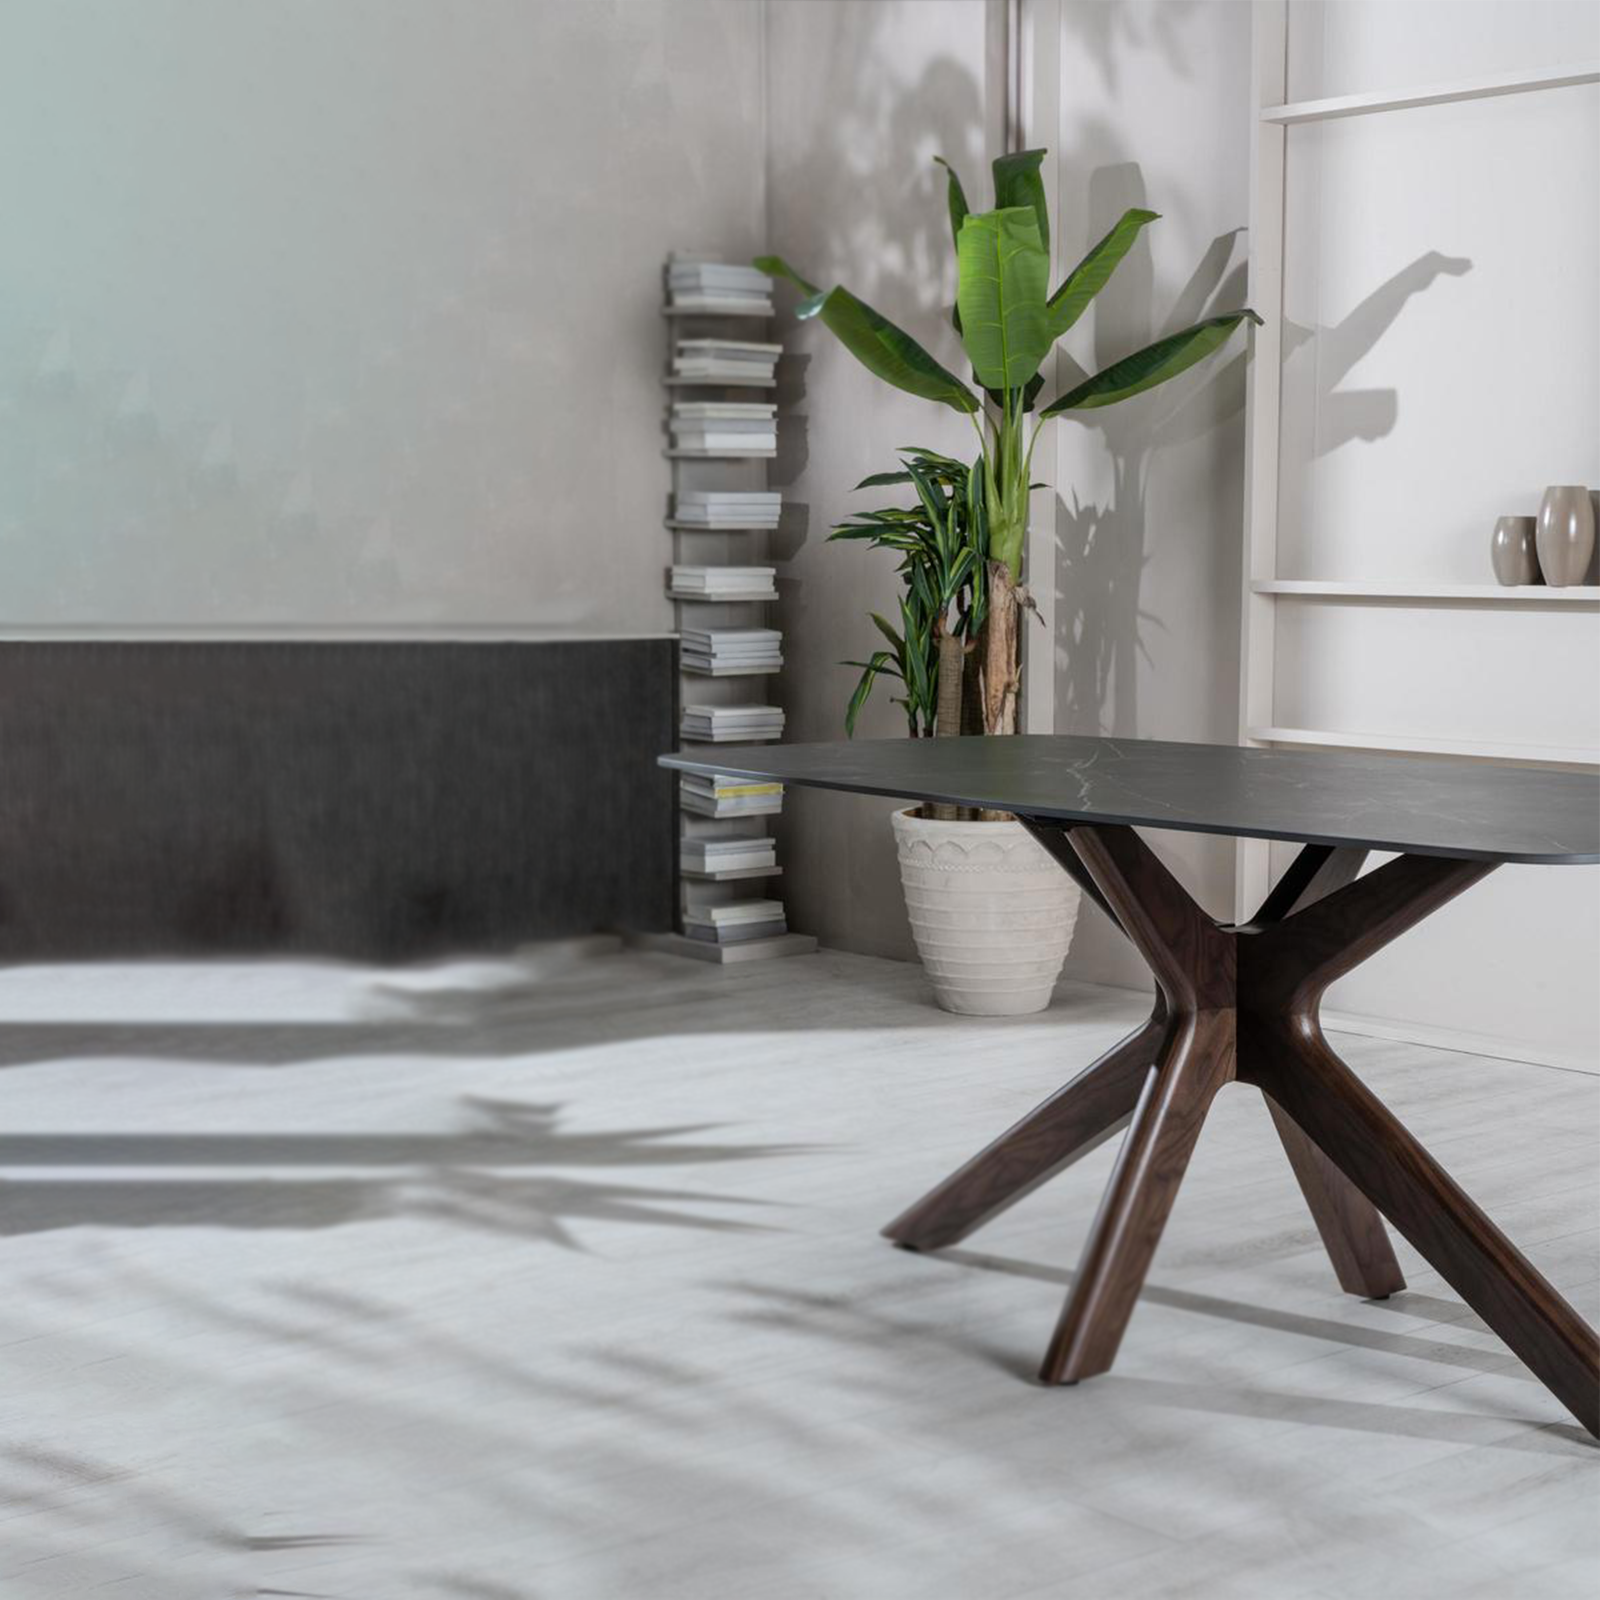 Table fixe en céramique "Gemini" effet marbre 180x90 cm 76h